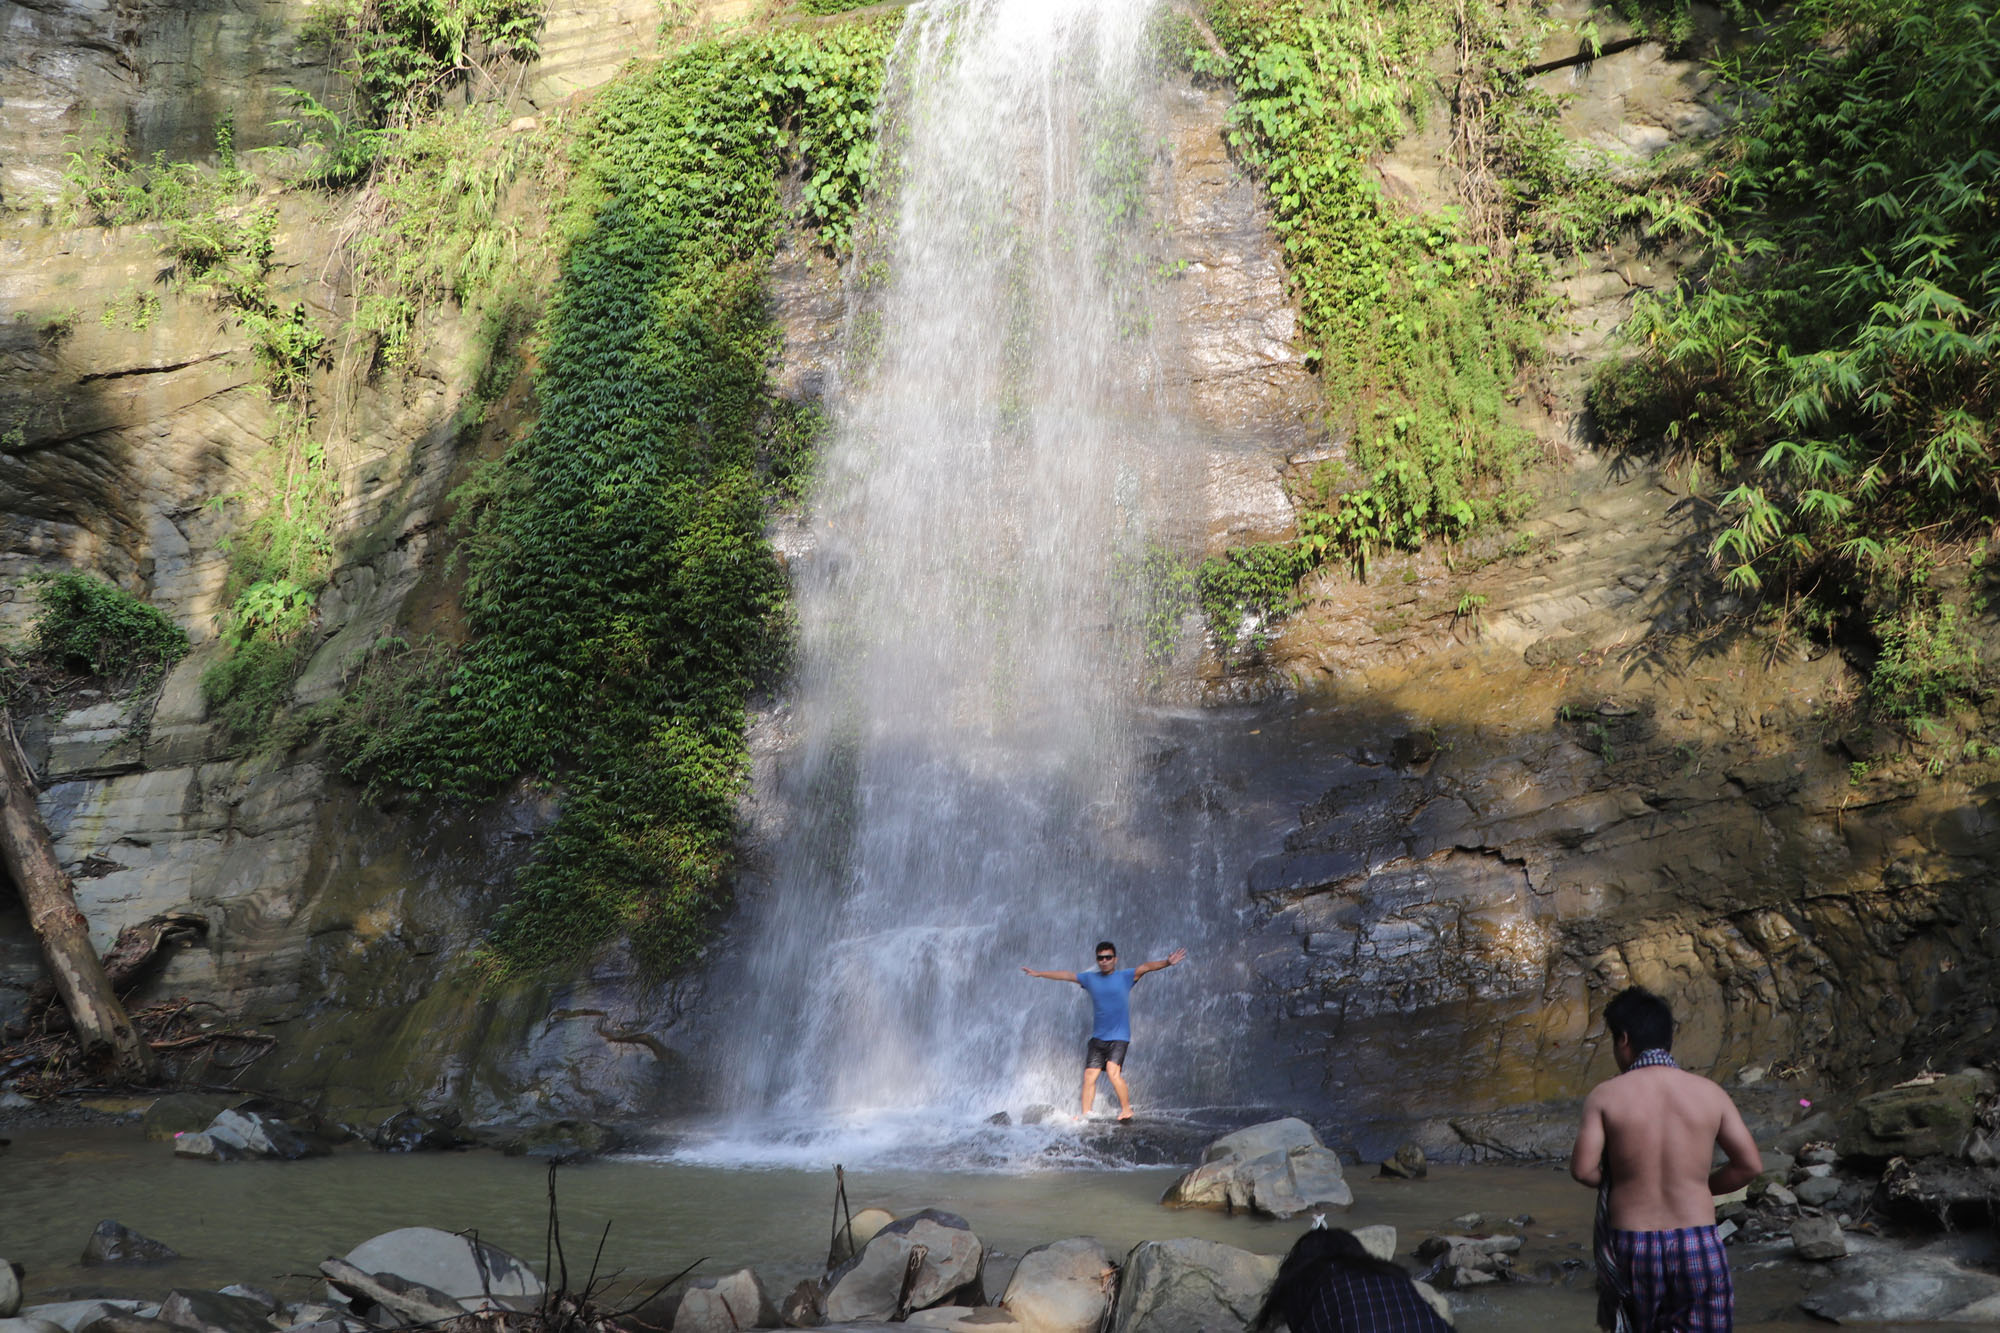 The Debotakhum Waterfall